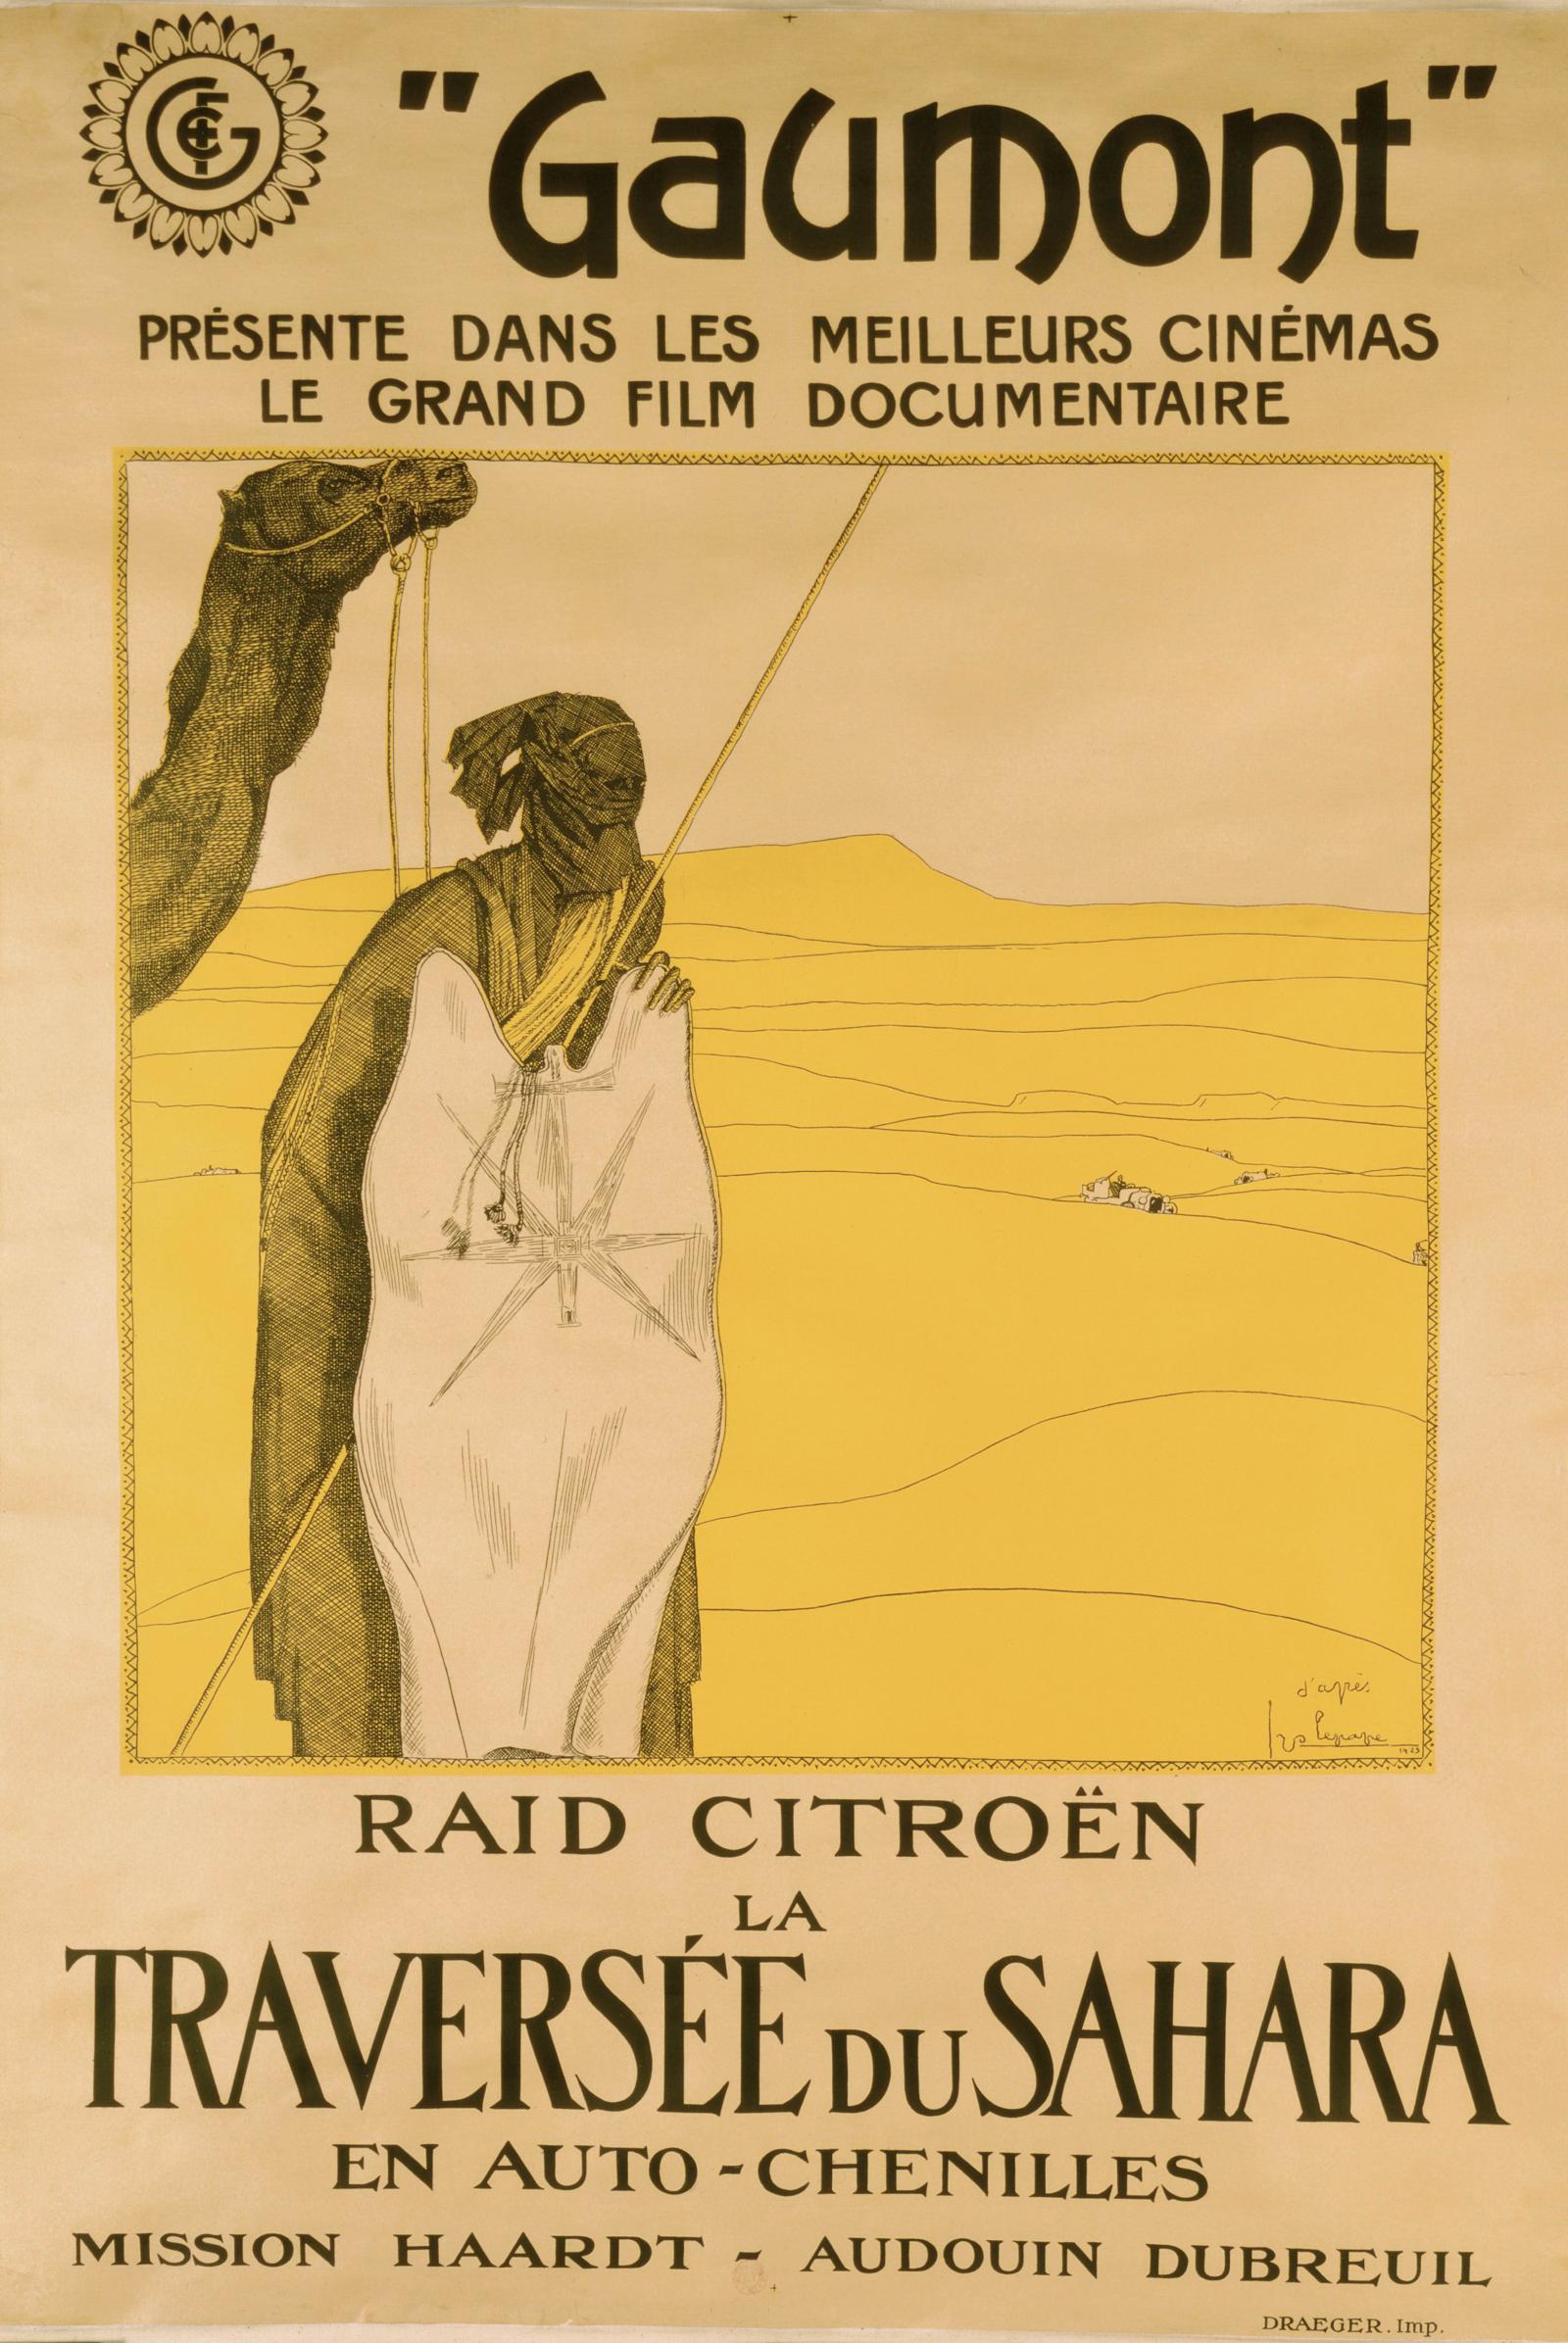 Première Traversée du Sahara 1923  - Gaumont